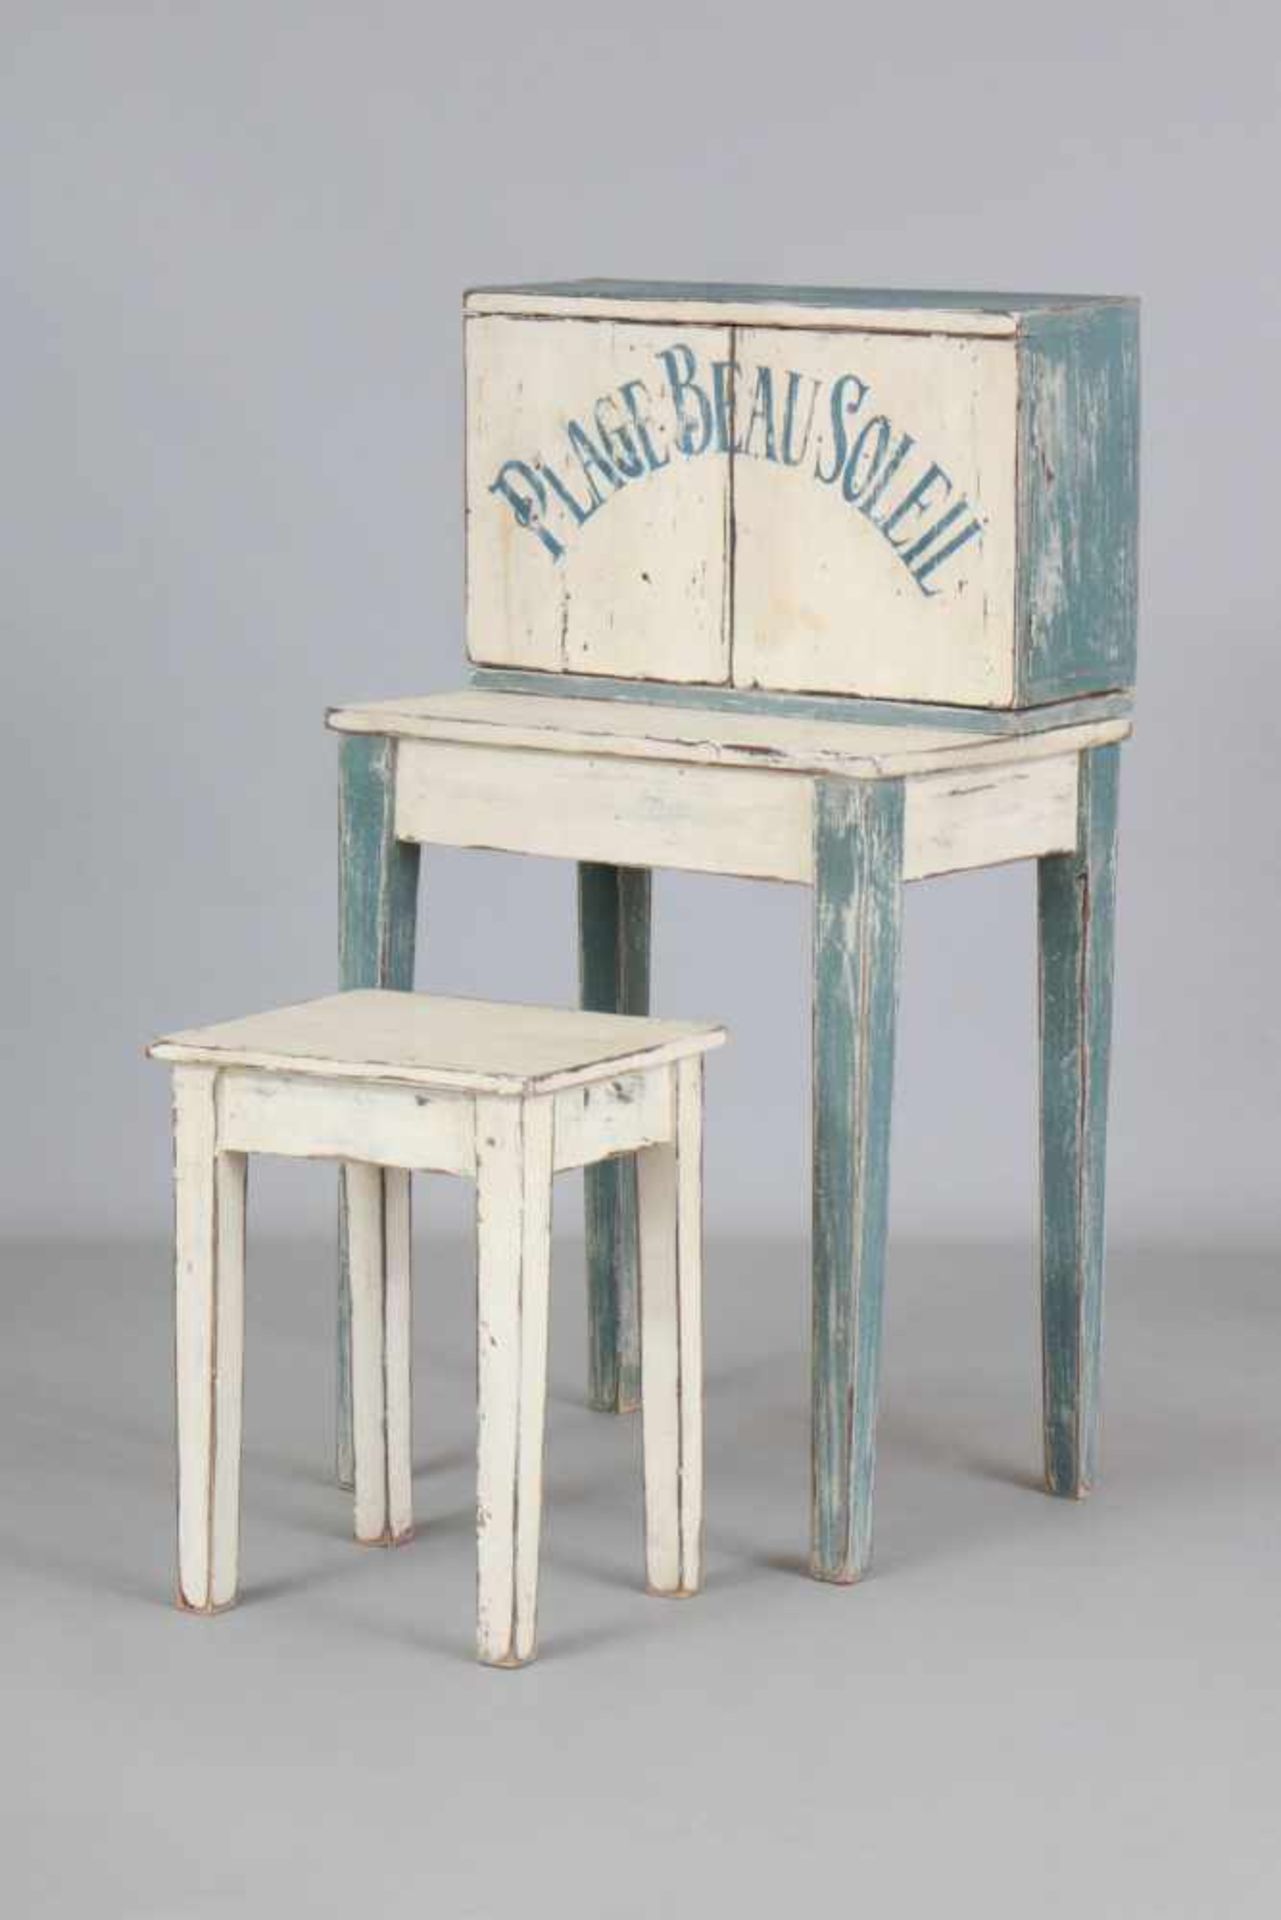 Kleiner Schreibtisch mit Hocker im Stile der JahrhundertwendeHolz, weiß und blau gefasst, auf den